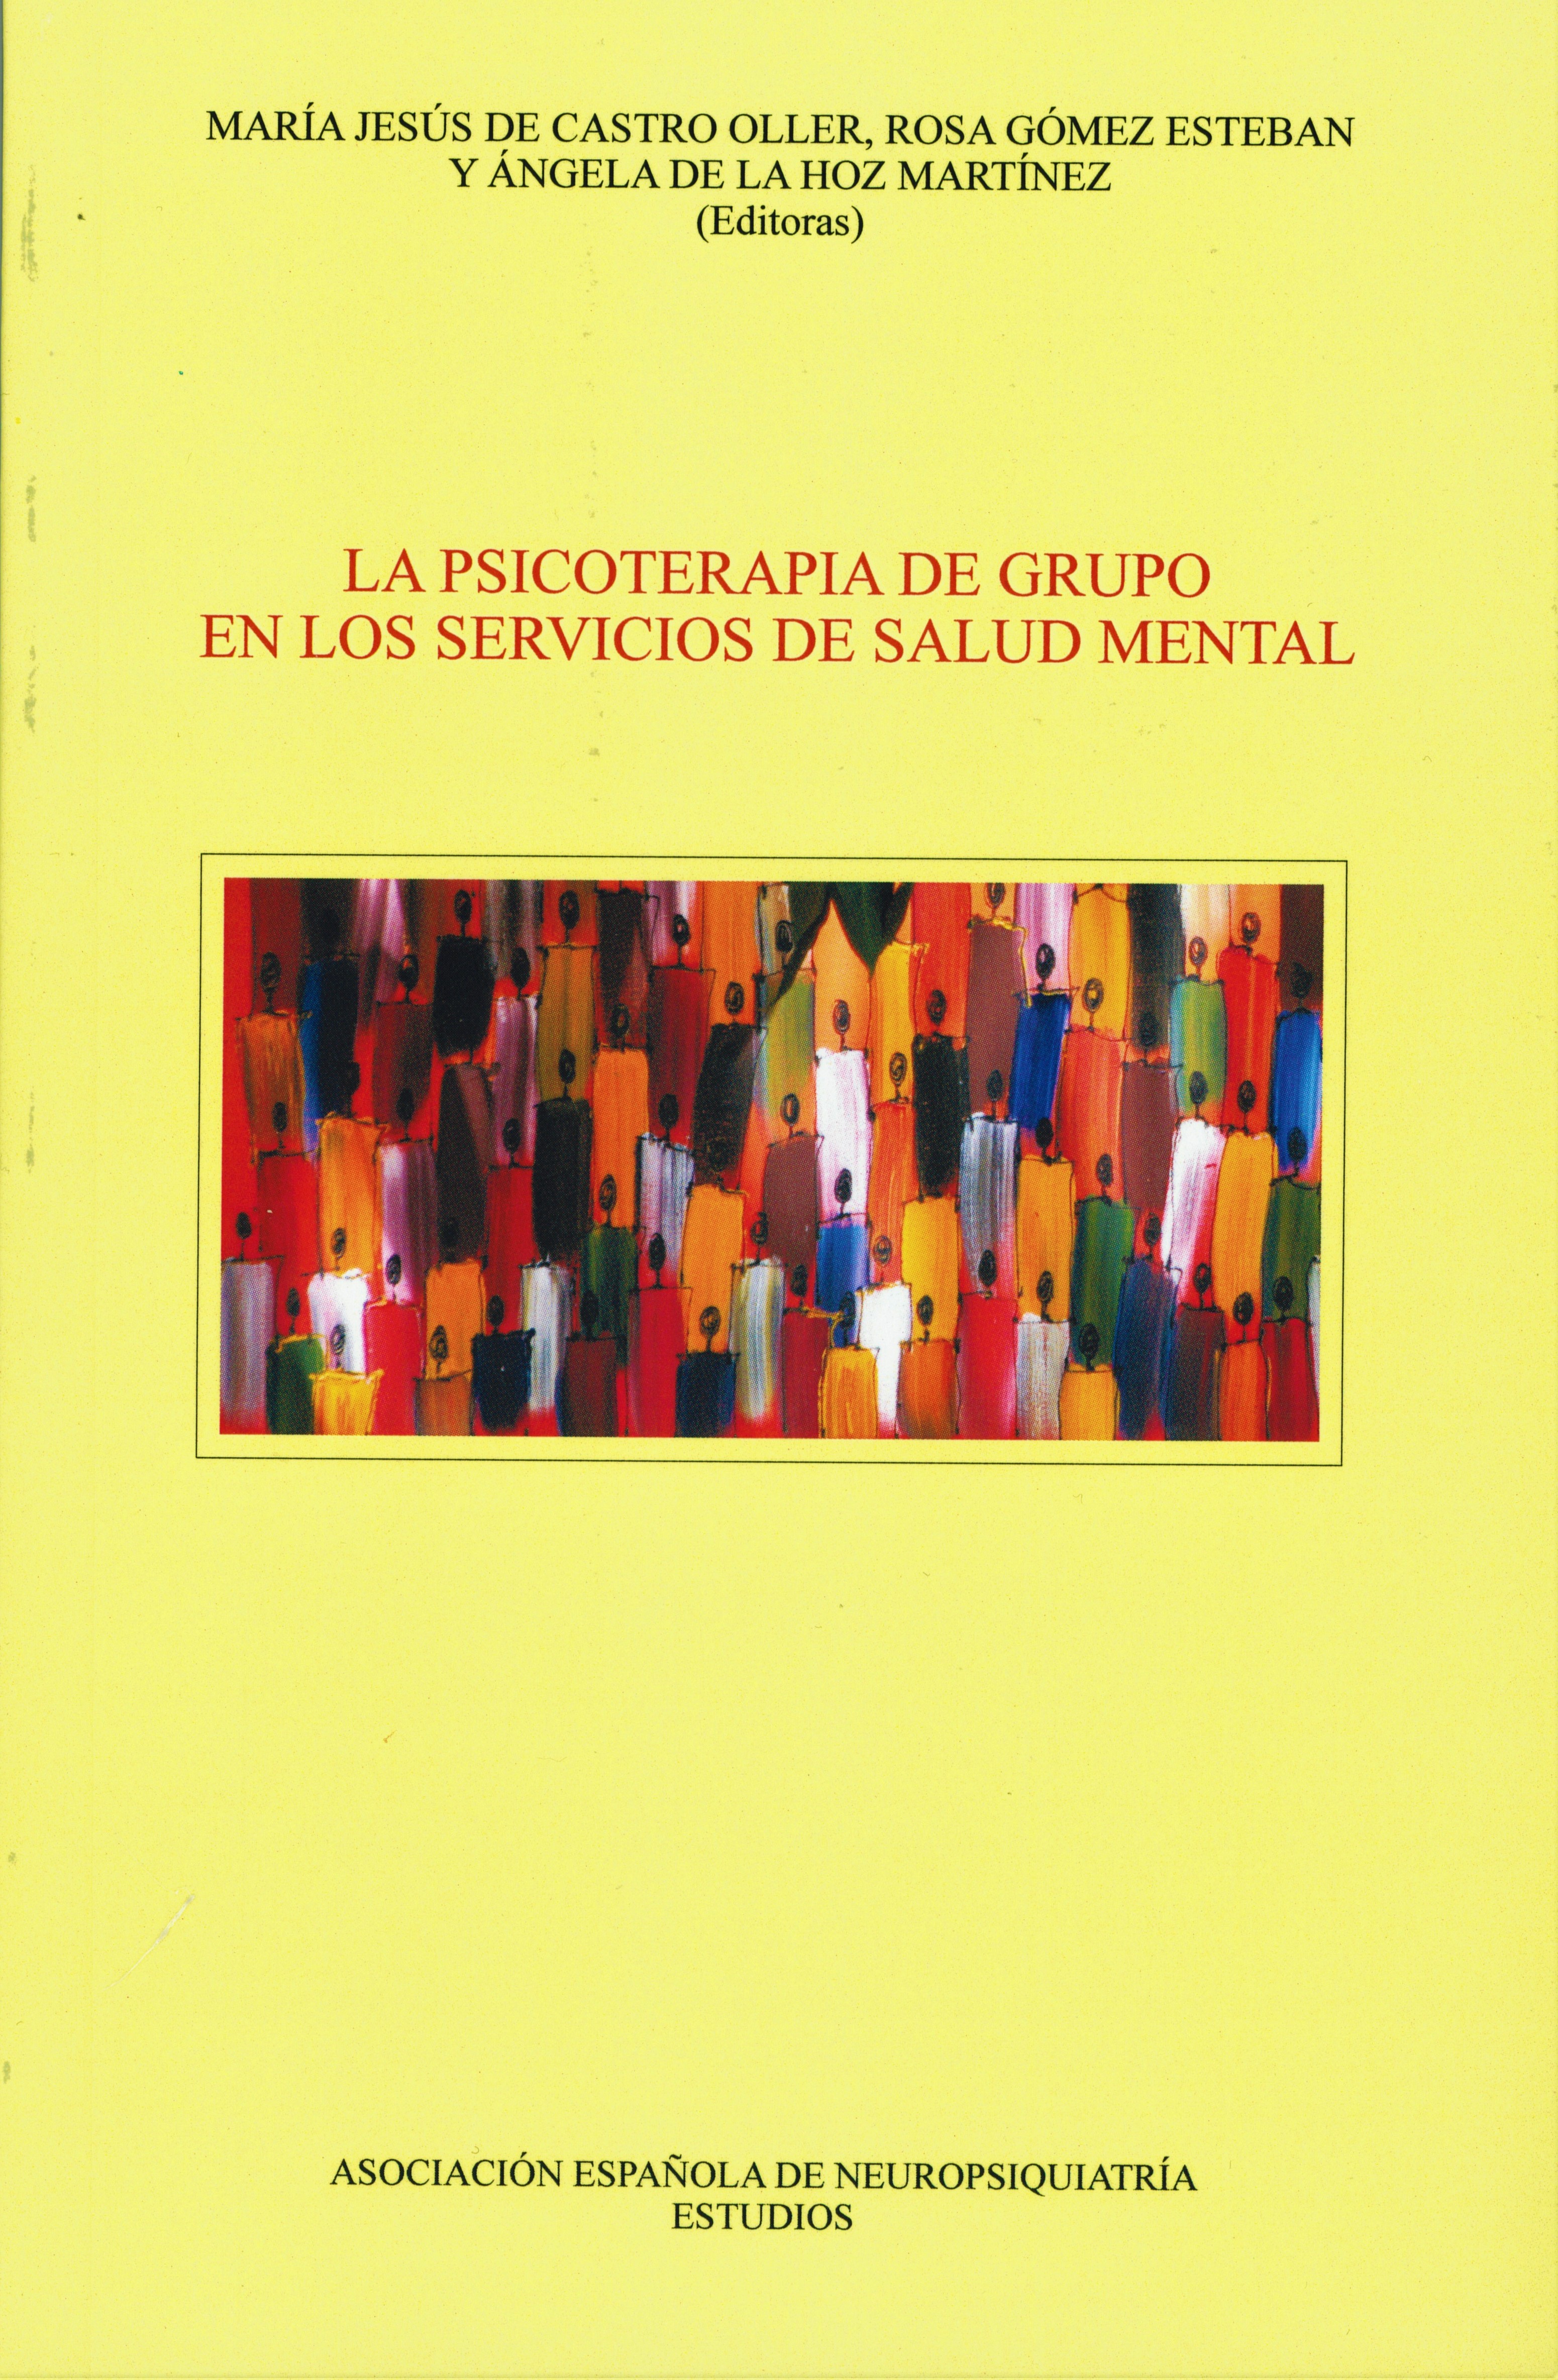 La psicoterapia de grupo en los servicios de salud mental